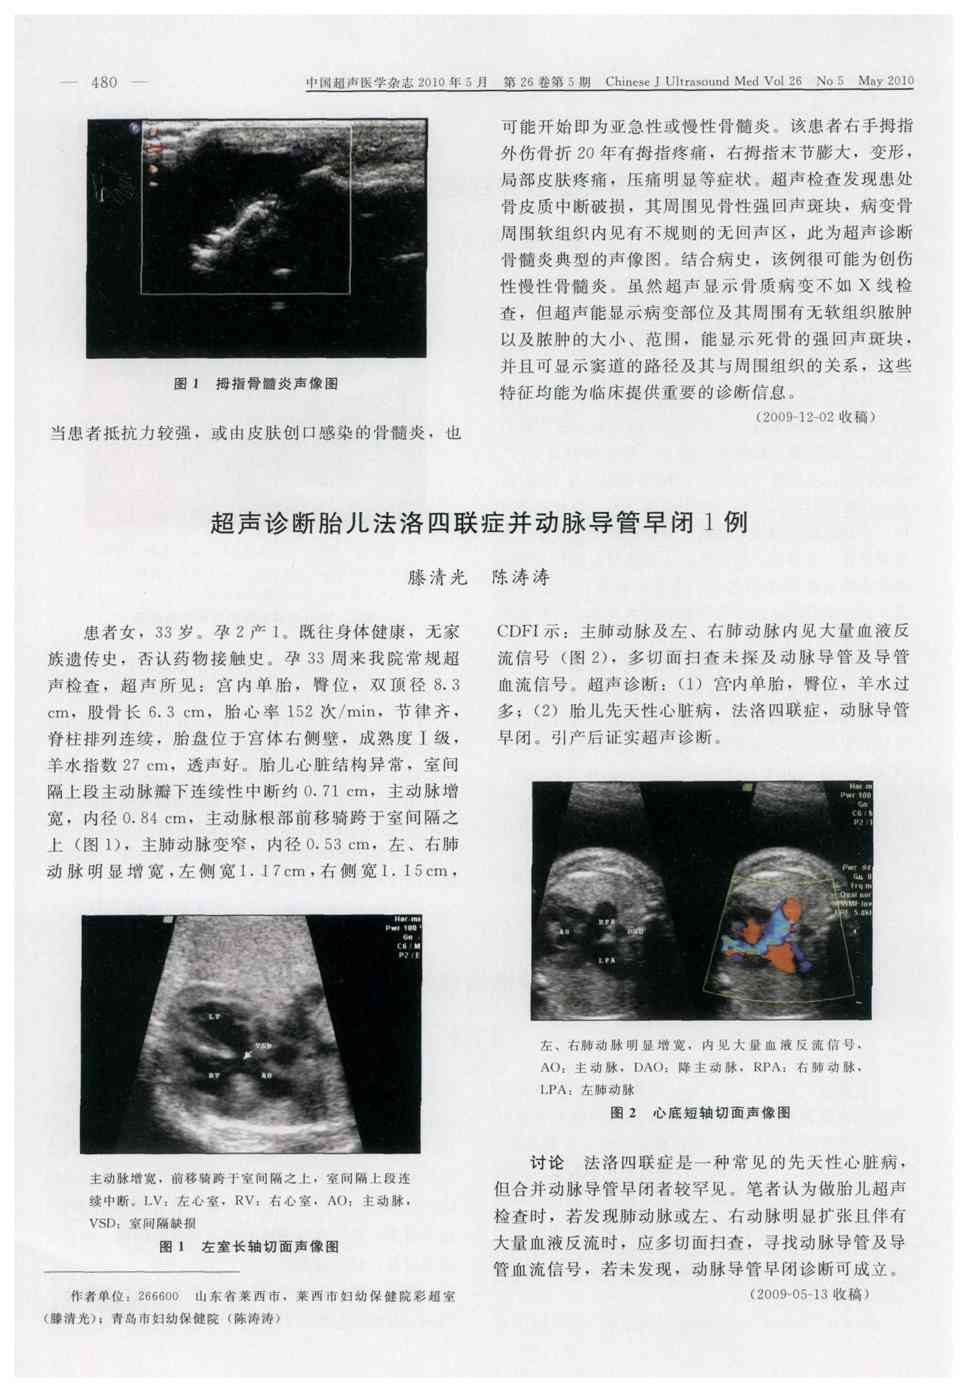 期刊超声诊断胎儿法洛四联症并动脉导管早闭1例    患者女,33岁.